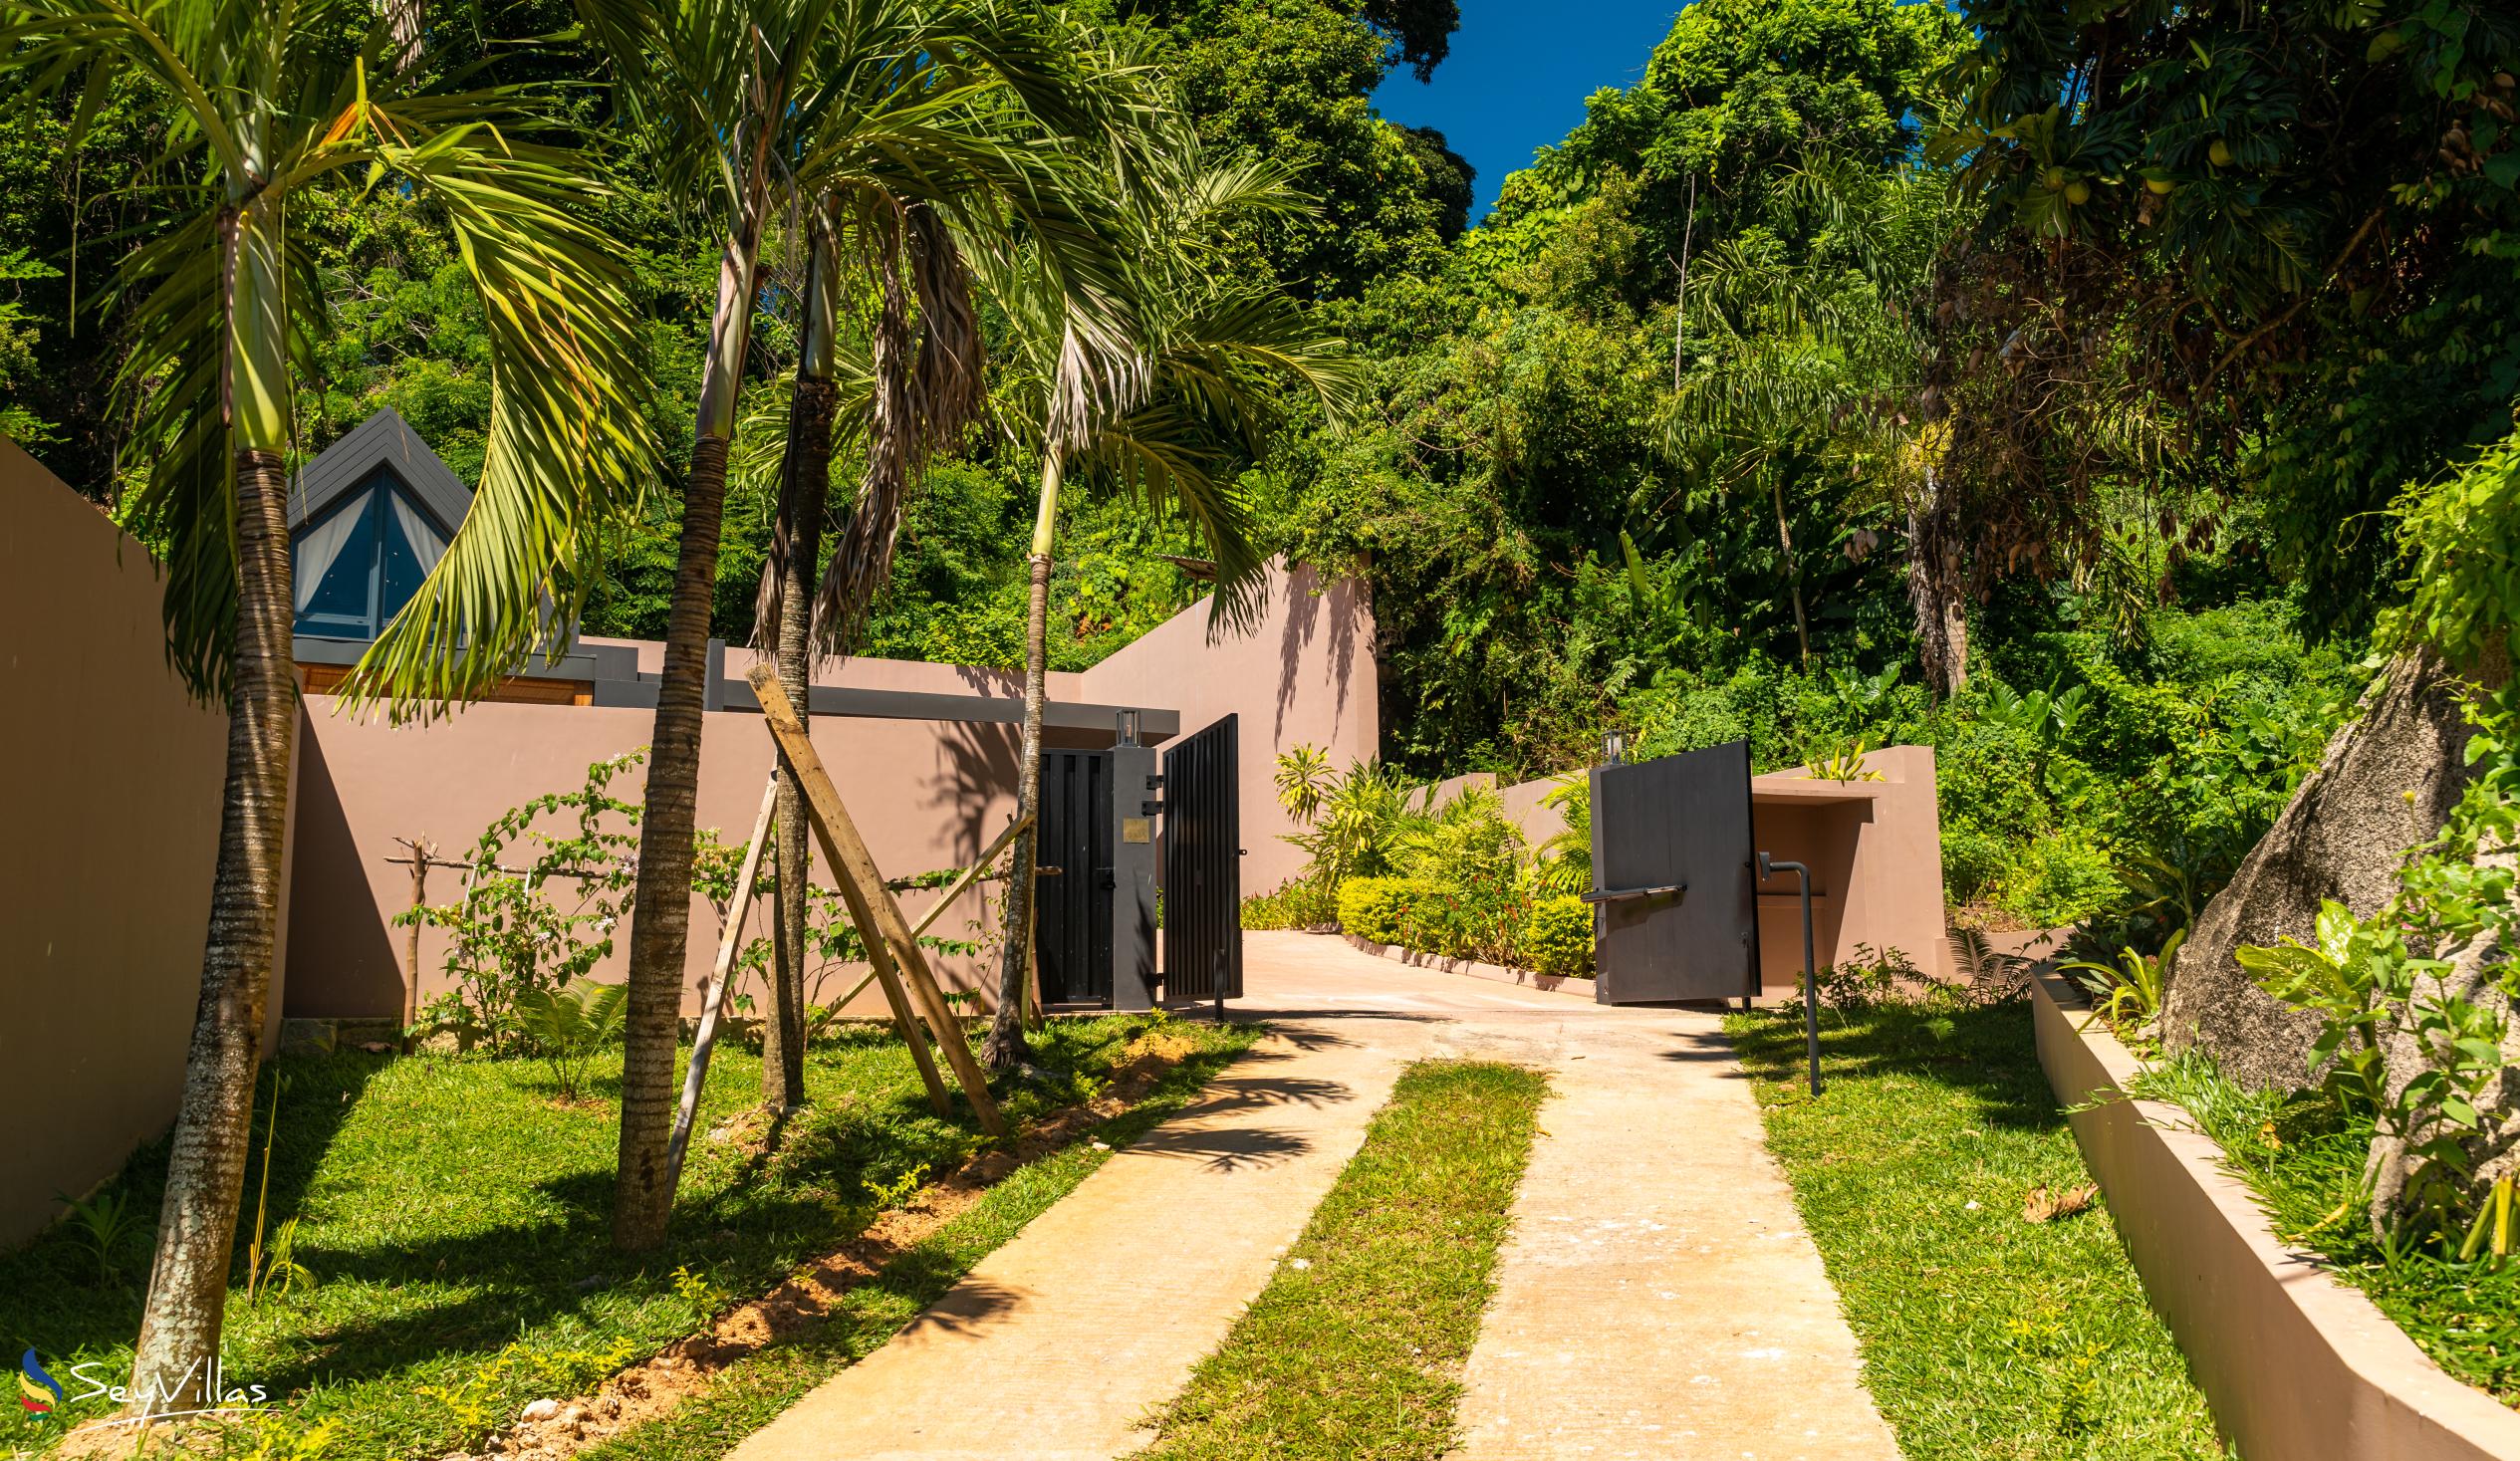 Foto 16: Maison Gaia - Extérieur - Mahé (Seychelles)